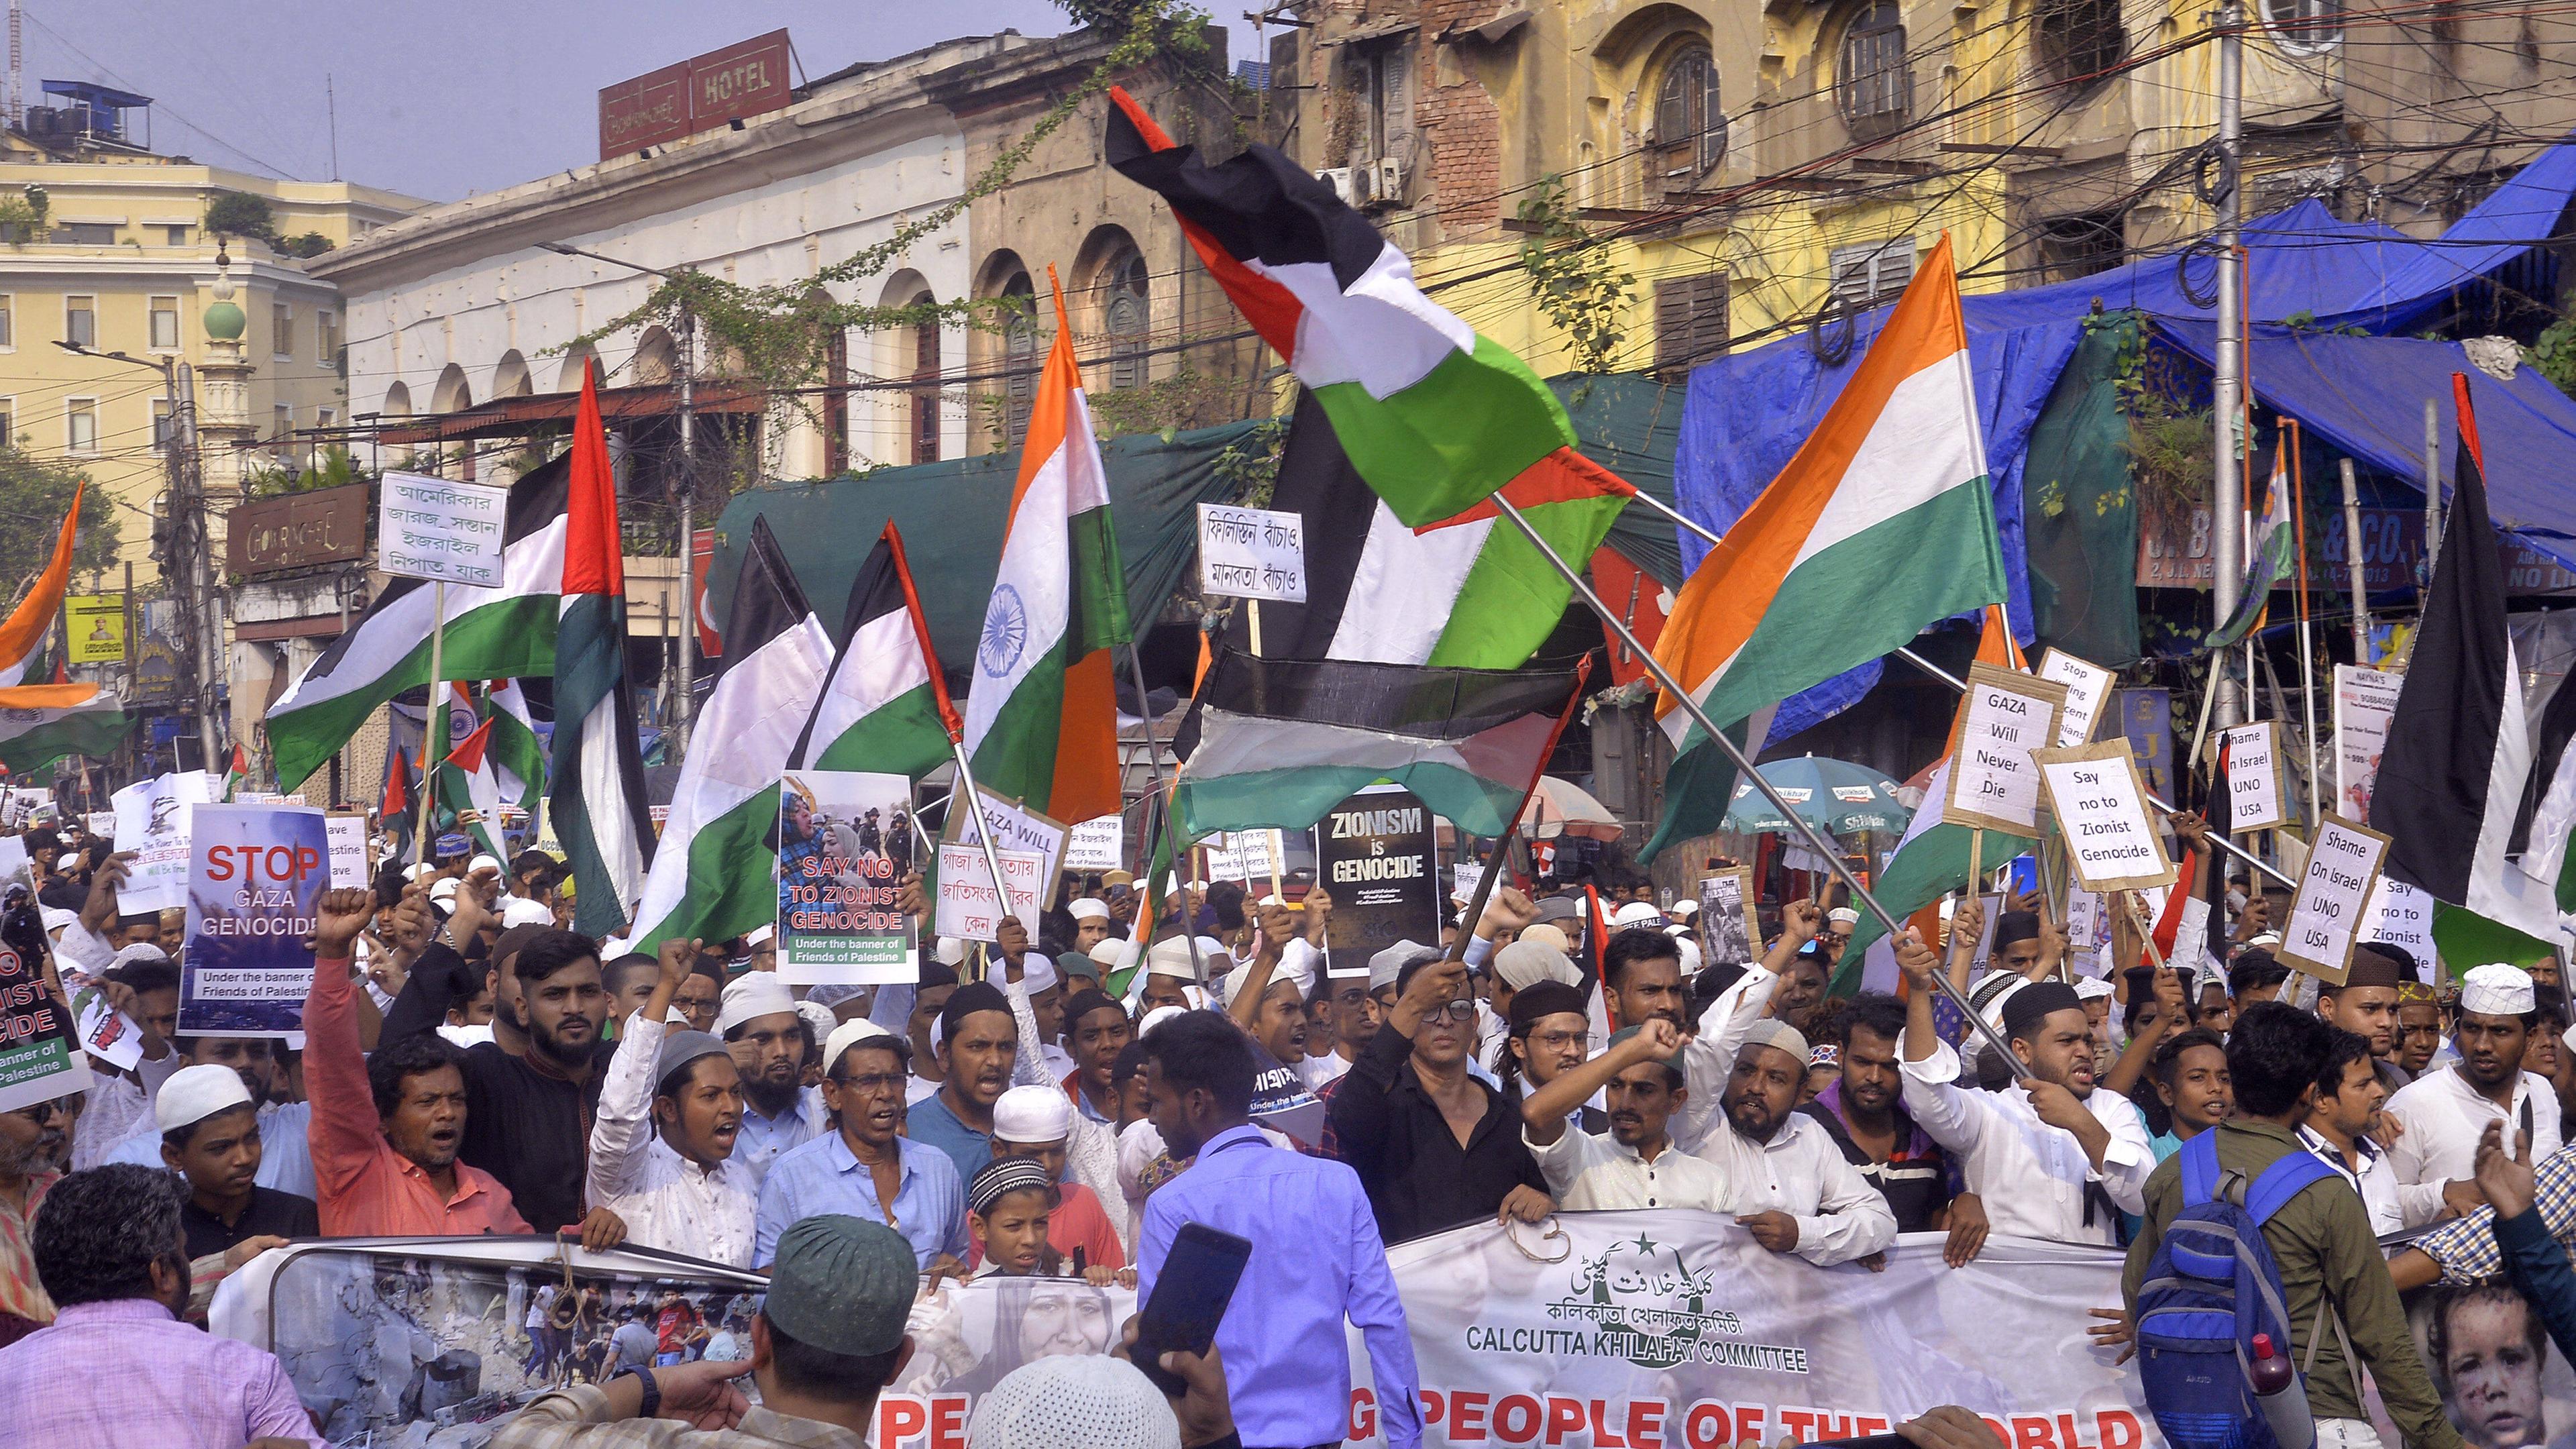 Pro-palästinensische Demonstranten in Kalkutta, Indien